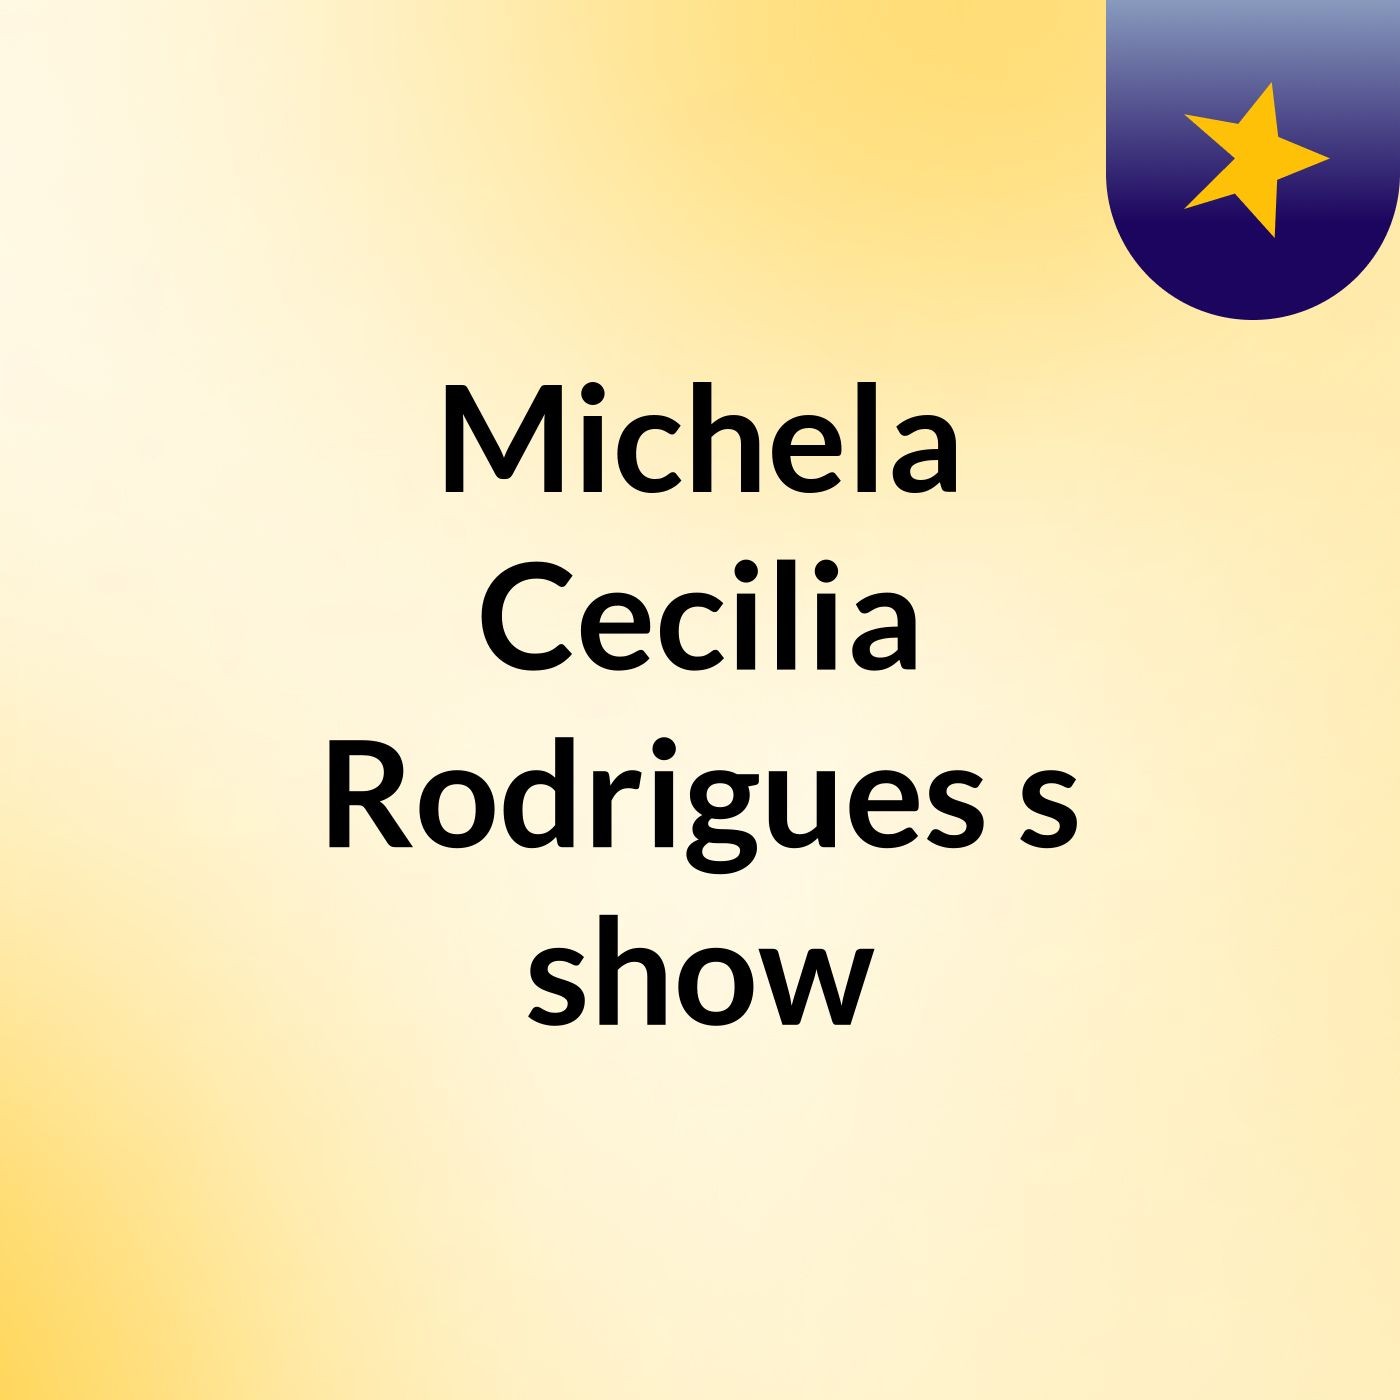 Michela Cecilia Rodrigues's show